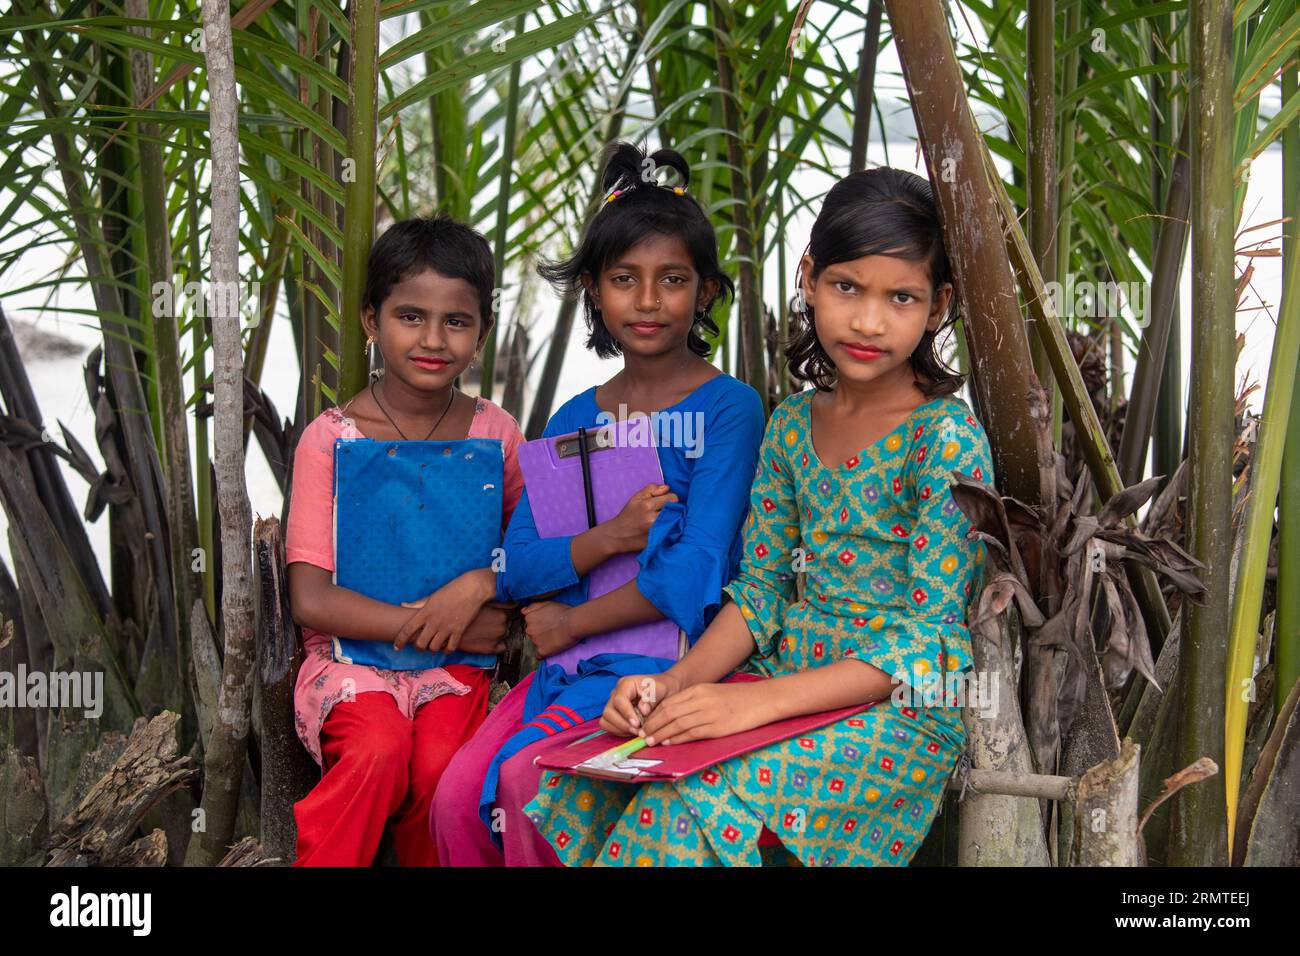 27. August 2023, Khulna, Bangladesch: Majia Akhtar (L) 9 Jahre alt Karima Begum, 10 Jahre alt (M) Sariya Akhtar, 11 Jahre alt posiert für ein Foto auf dem Weg zur Schule in einem Küstengebiet von Kalabogi in Khulna. Vor nicht allzu langer Zeit war Kalabogi, ein Küstendorf in Bangladesch, voll von kultivierbarem Land, bis der Anstieg des Meeresspiegels begann, das Gebiet bis zur Bucht von Bengalen zu verschlingen. Häufige Zyklone und Überschwemmungen haben das Dorf seit den späten 1990er Jahren getroffen 2009 zerstörte ein großer Zyklon namens Aila die 1.400 Kilometer Dämme, 8.800 Kilometer Straßen und etwa 50.000 acr Stockfoto